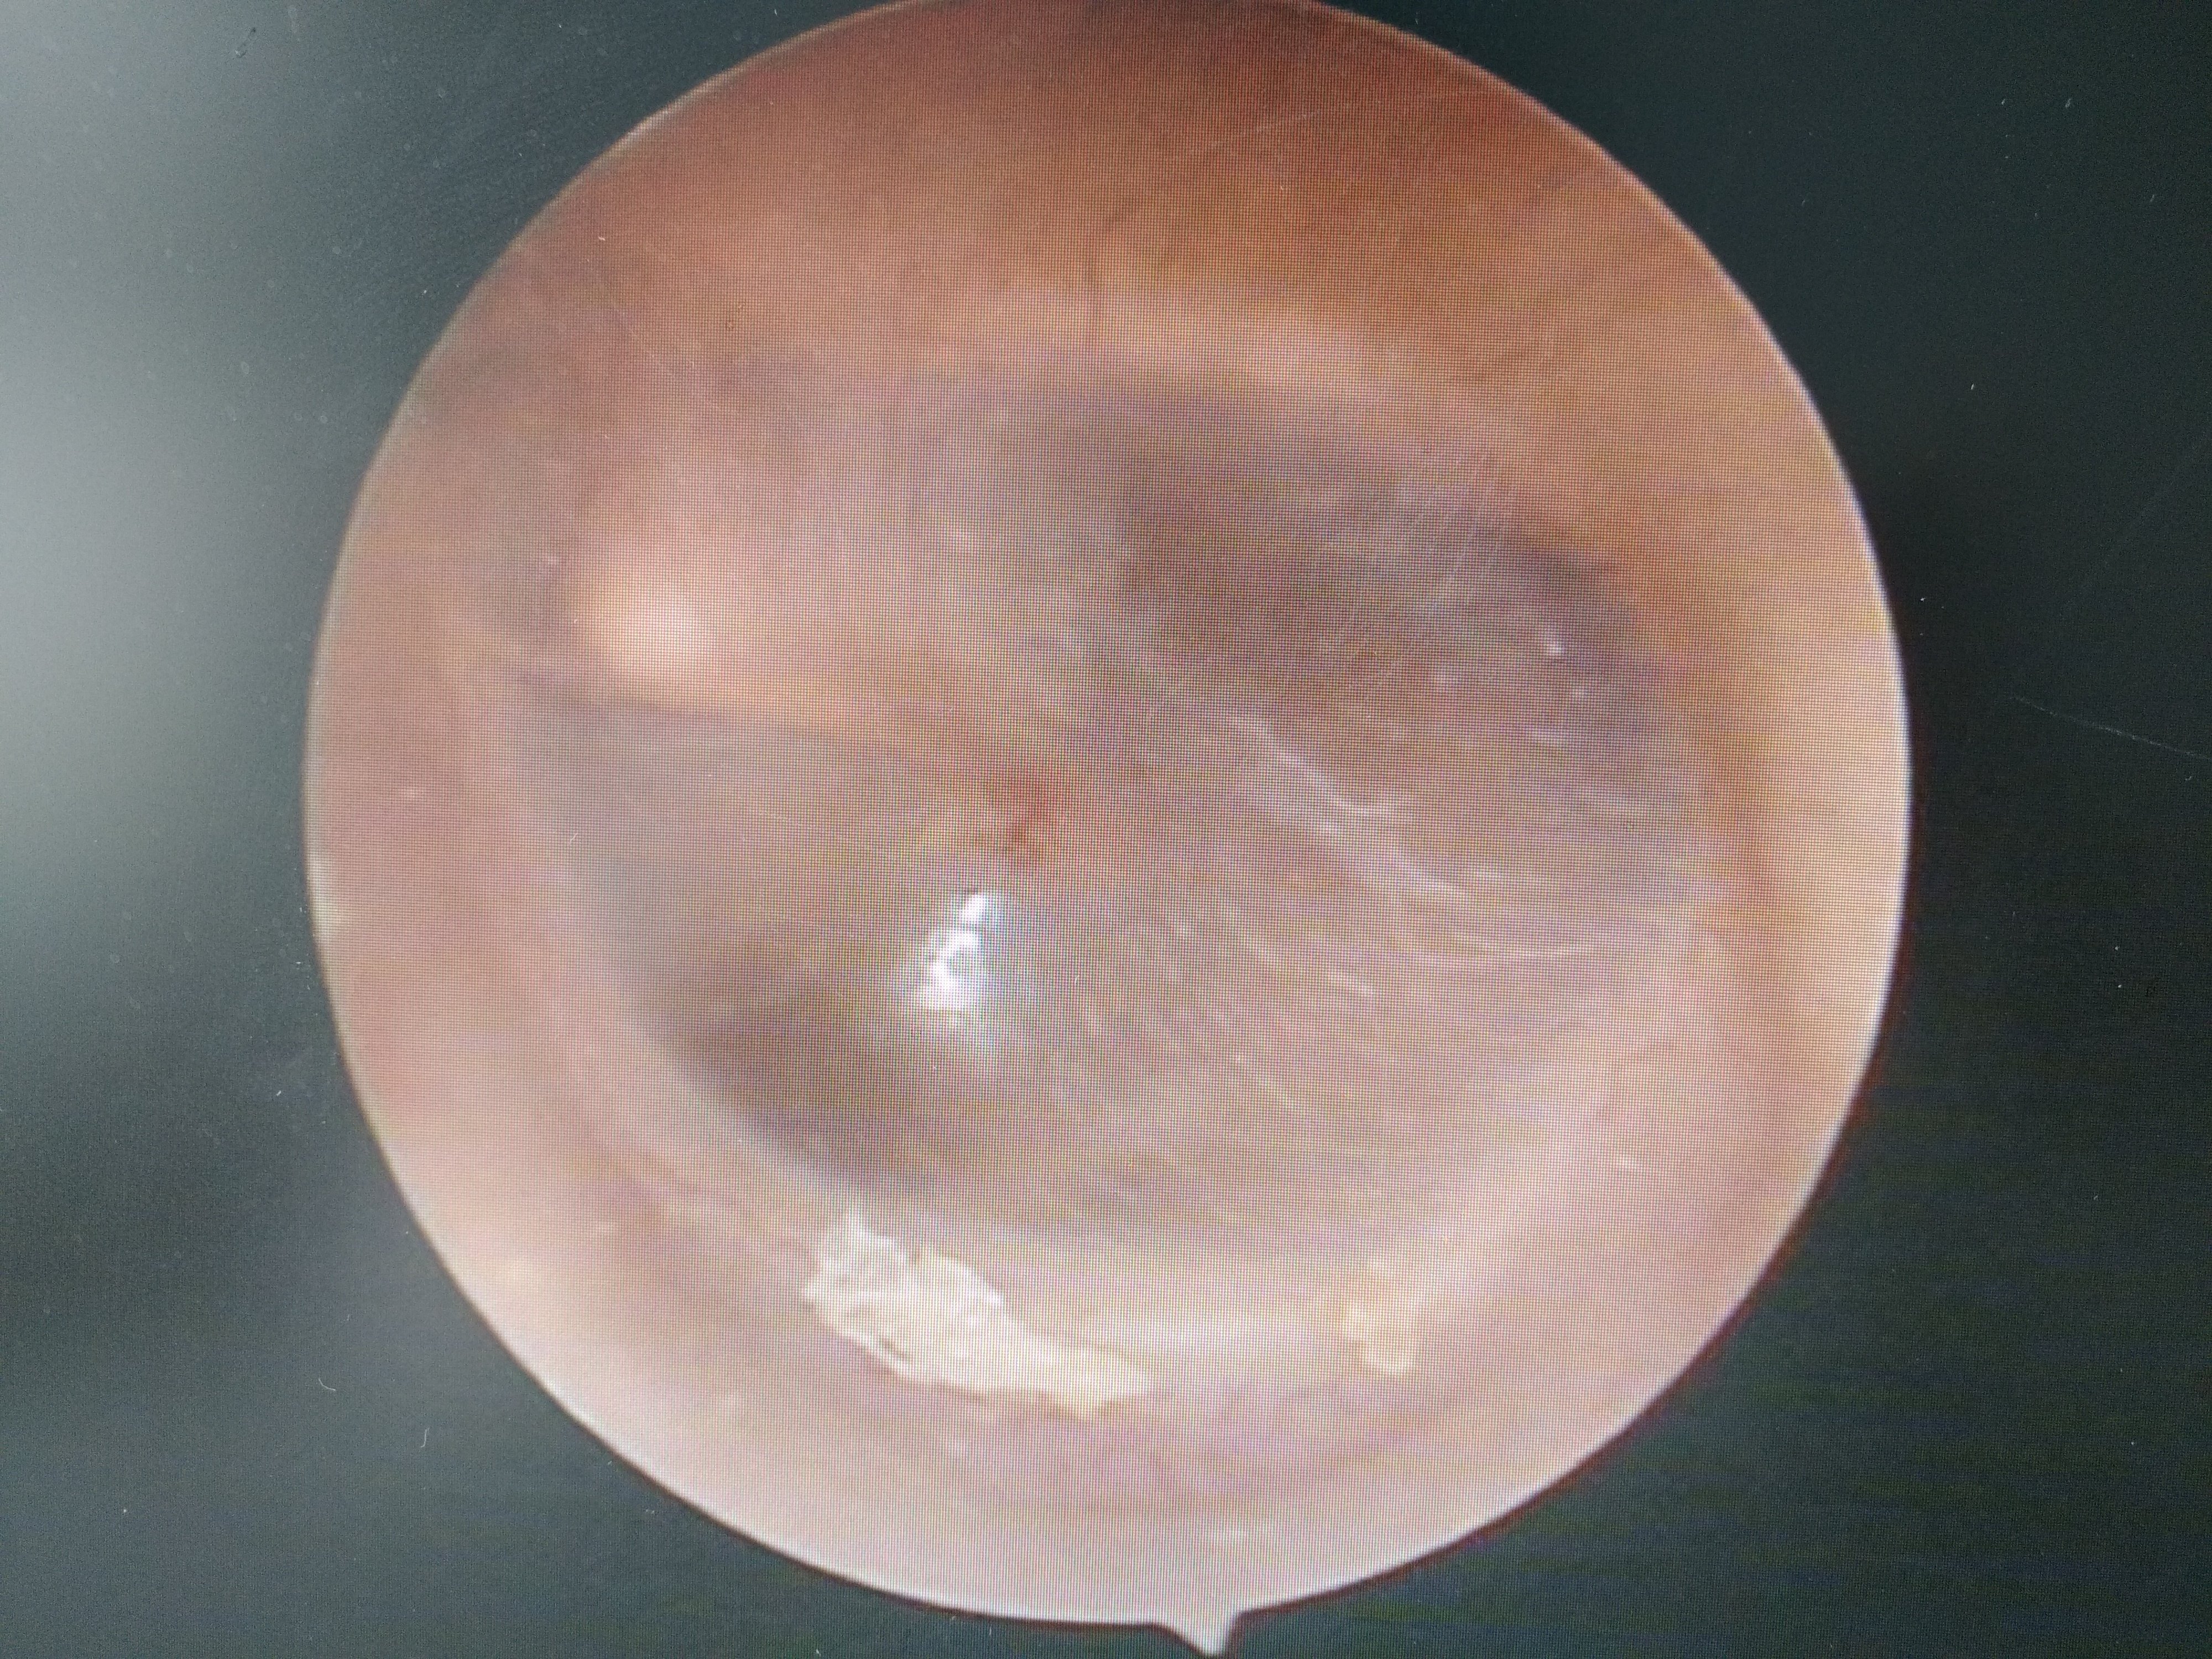 耳朵内部鼓膜正常图片图片